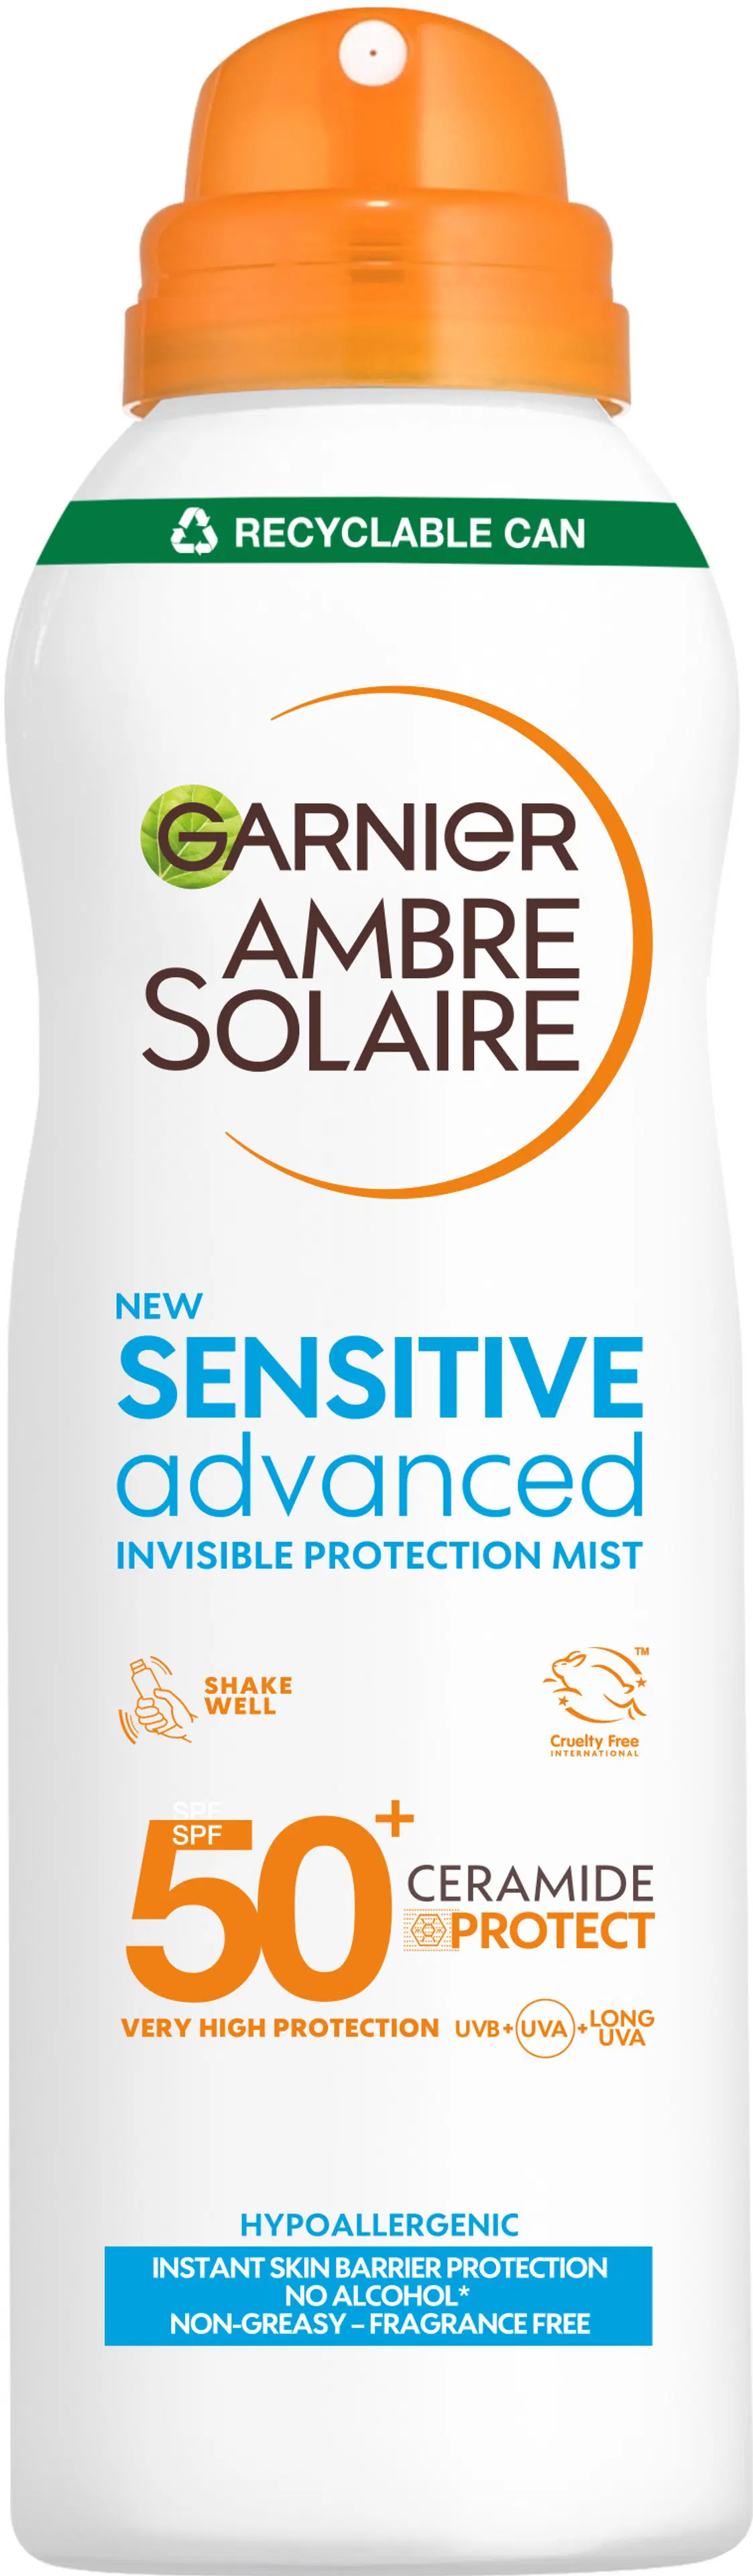 Garnier Ambre Solaire Sensitive Advanced Aurinkosuoja herkälle iholle 150ml